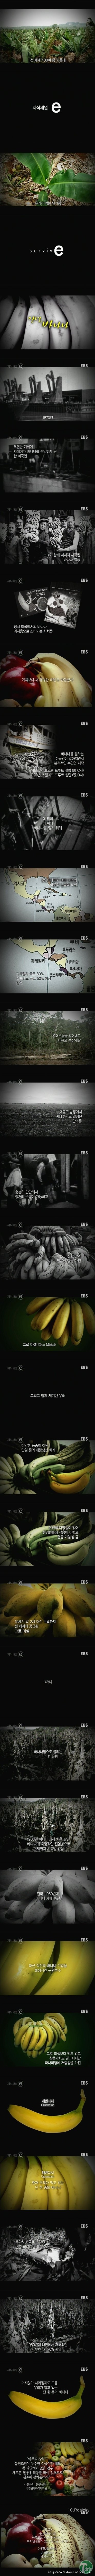 1 (5).jpg : 멸종위기 바나나.jpg